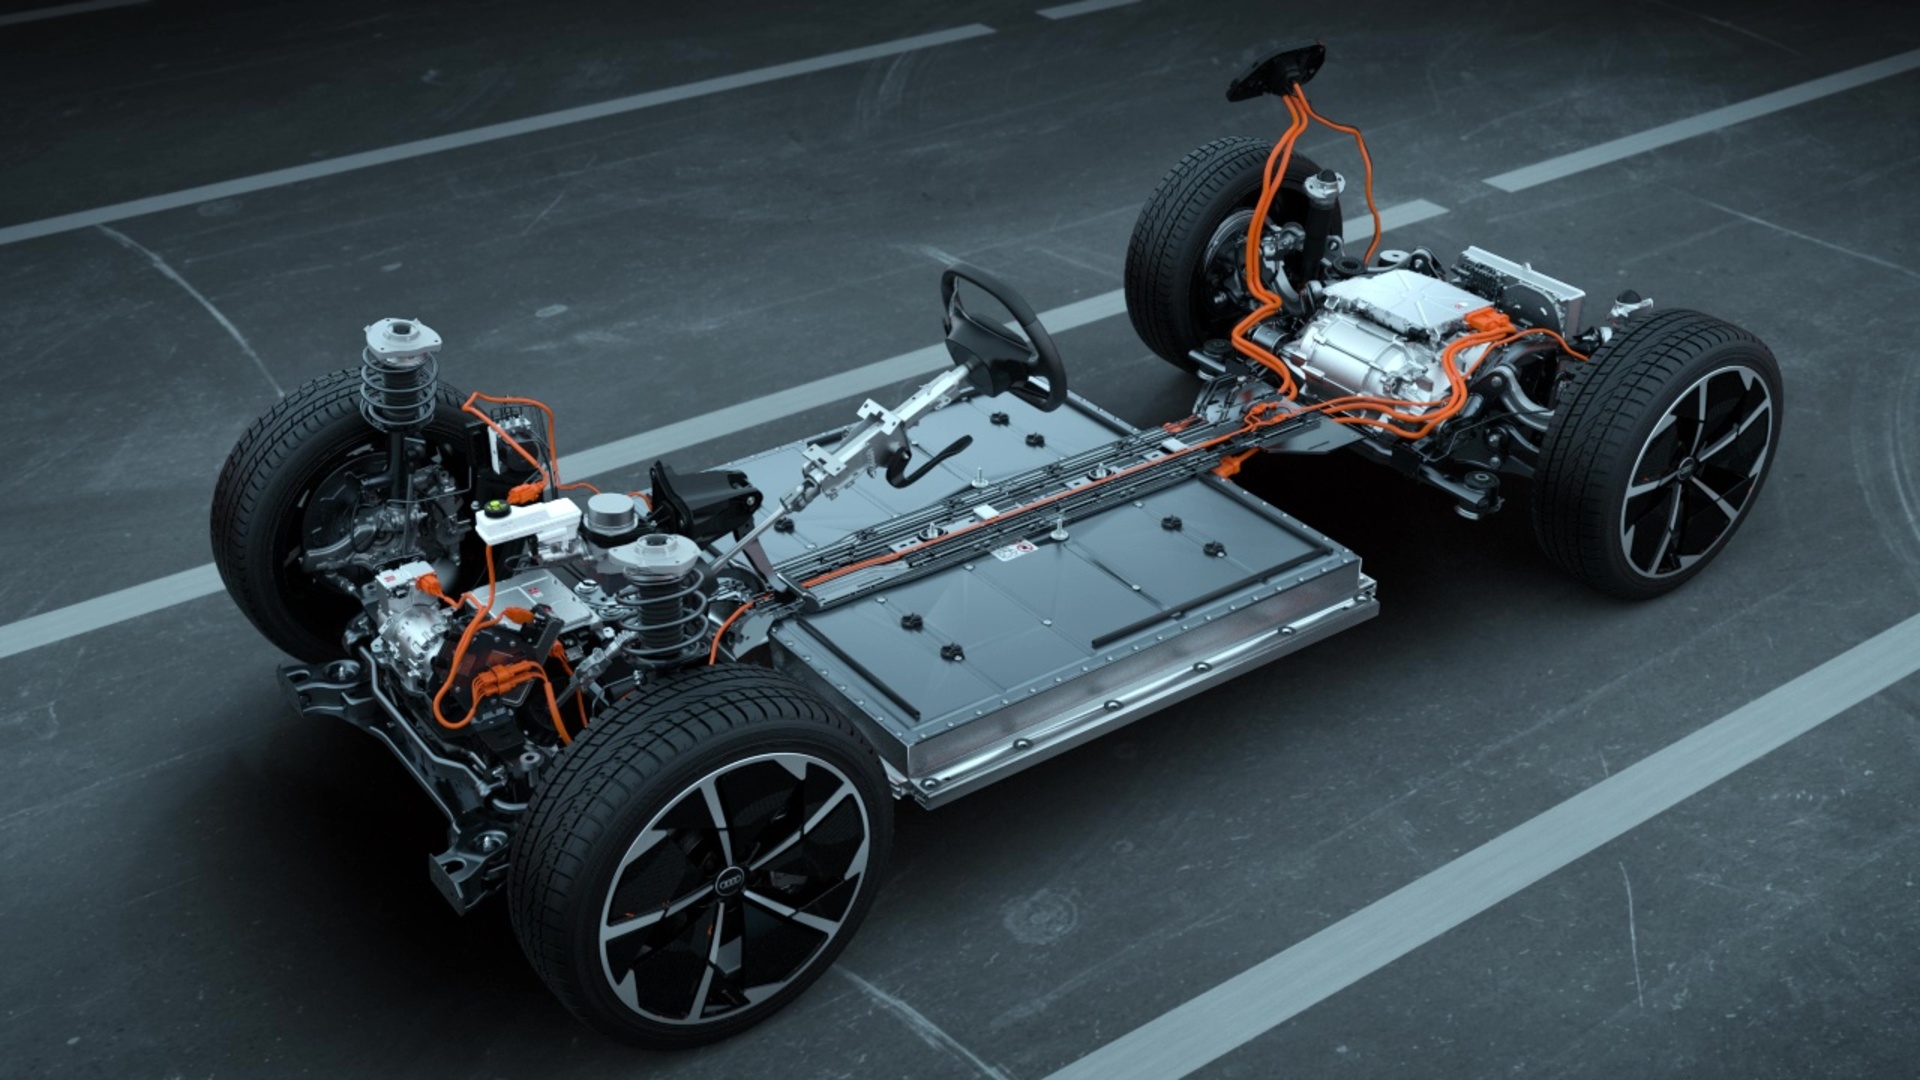 Audi Q4 e-tron – Modular electric platform - Audi Technology Portal